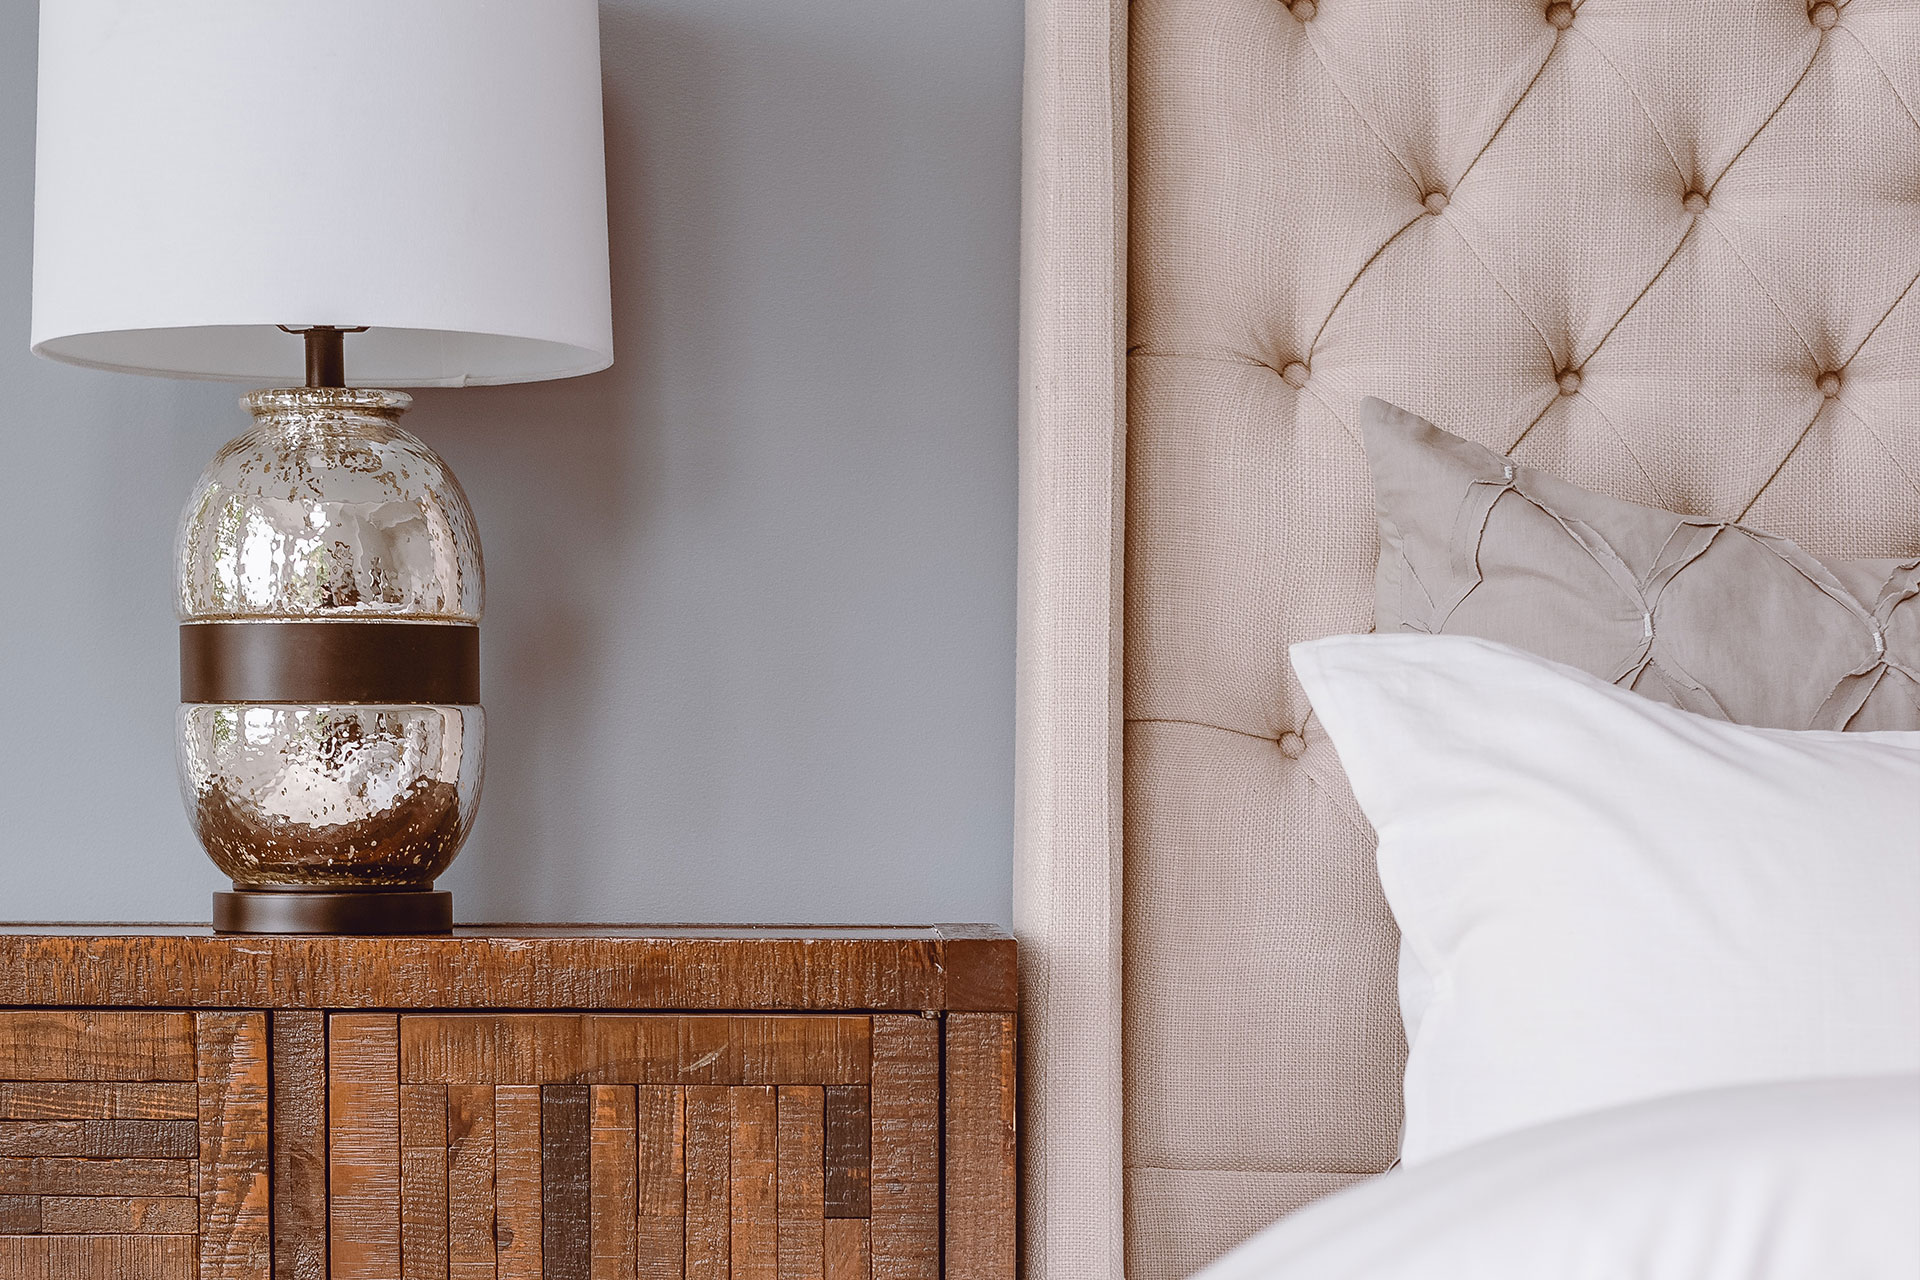 Hotellstandard i sovrummet – 12 enkla tips för en lyxigare känsla | MOHV